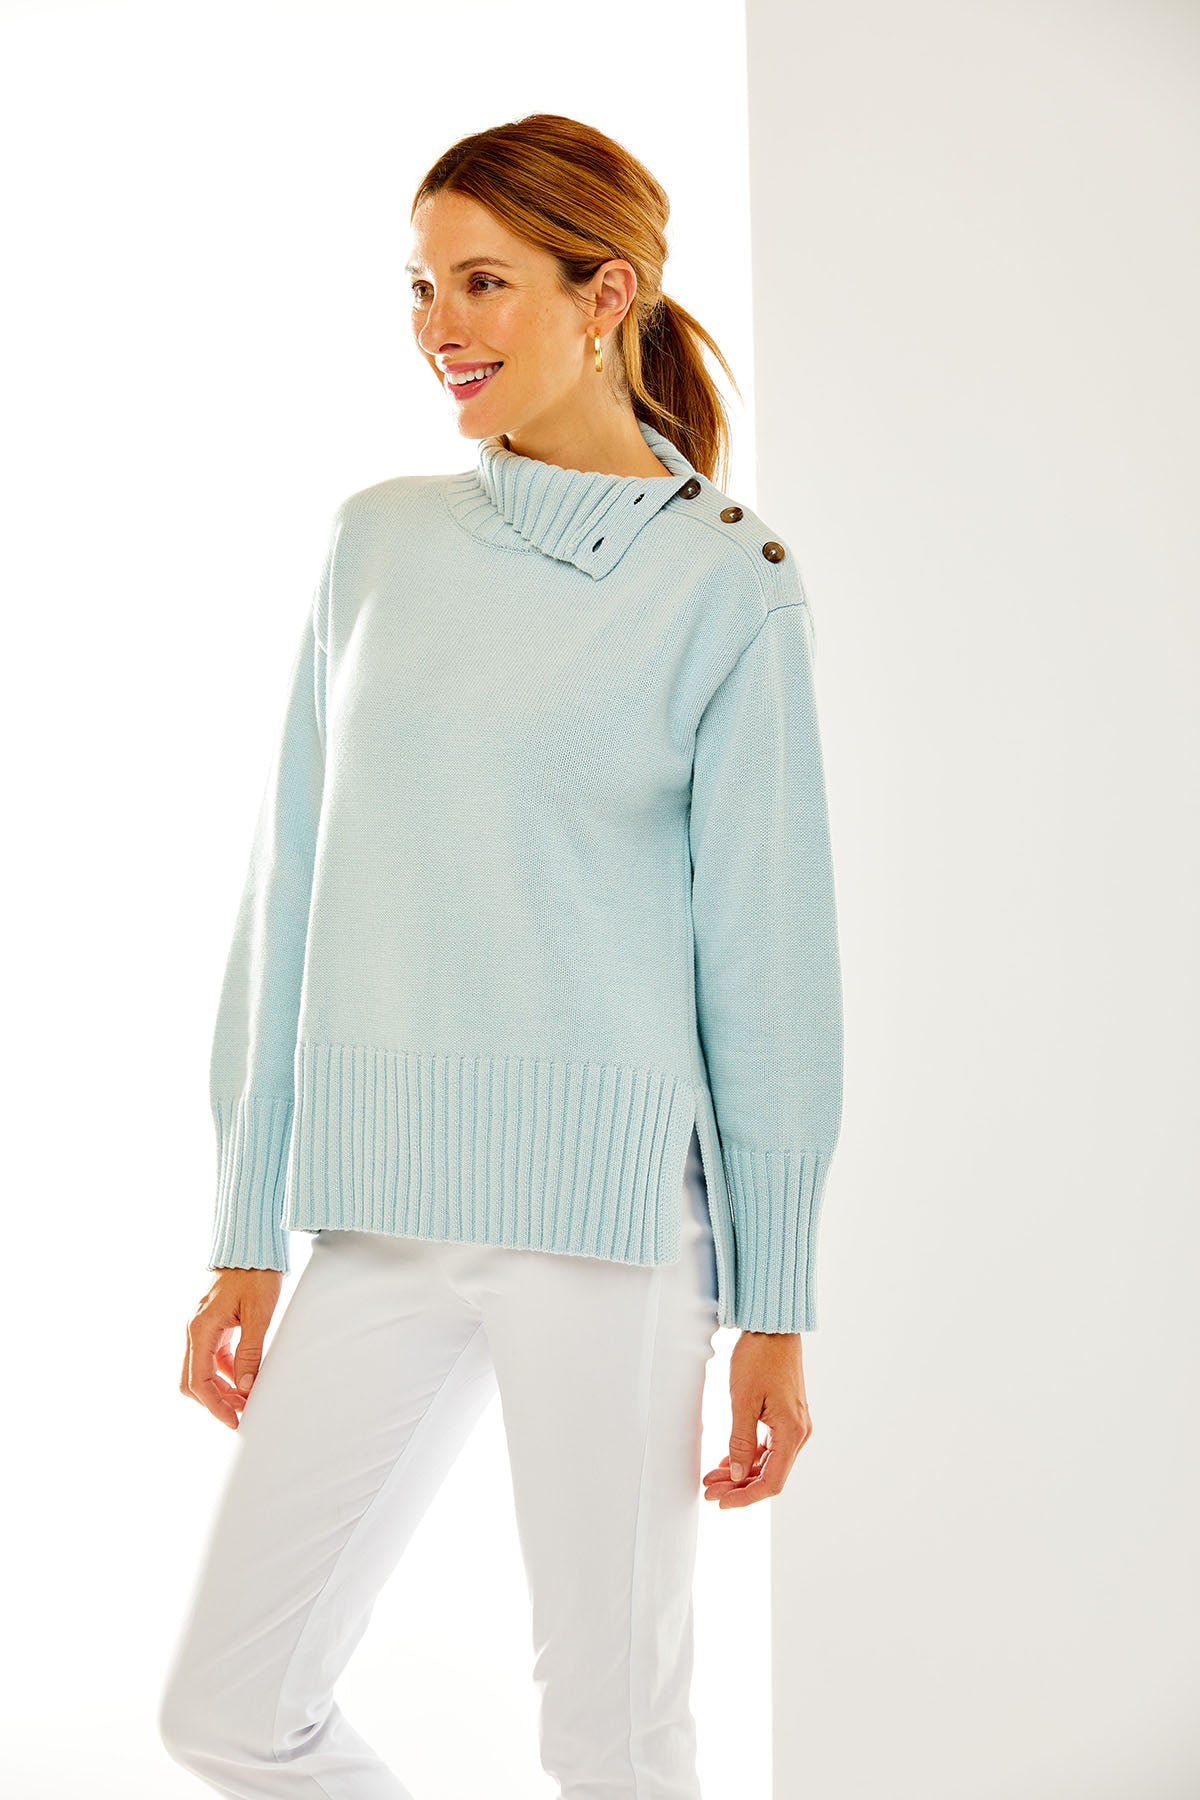 Woman in light blue sweater